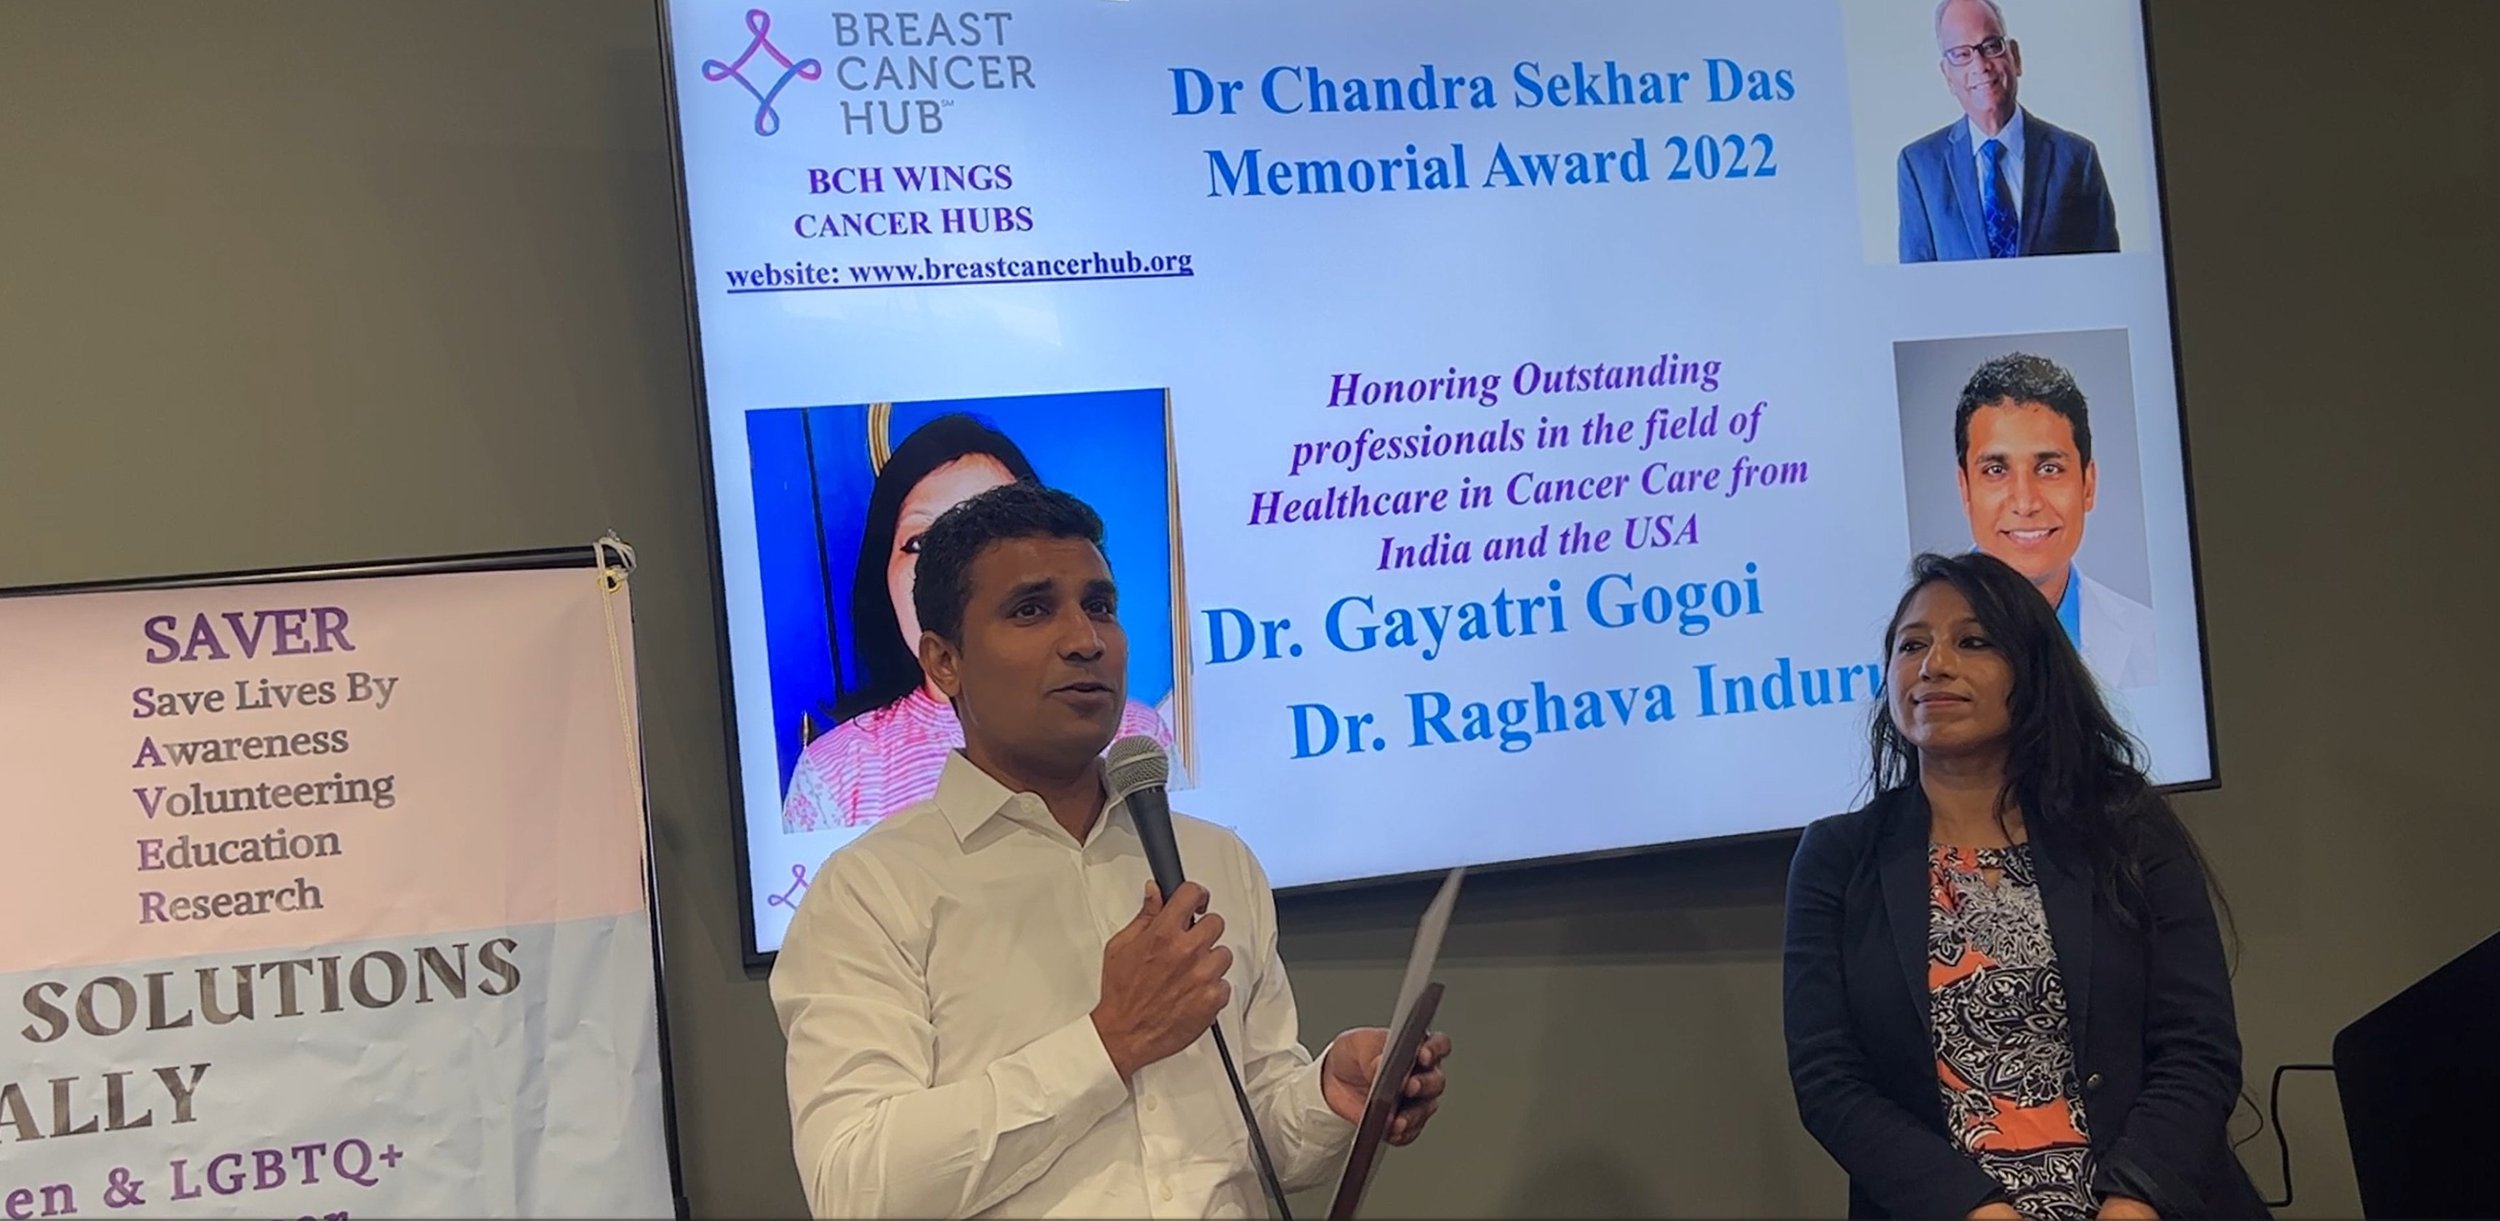 Dr. Raghava Induru